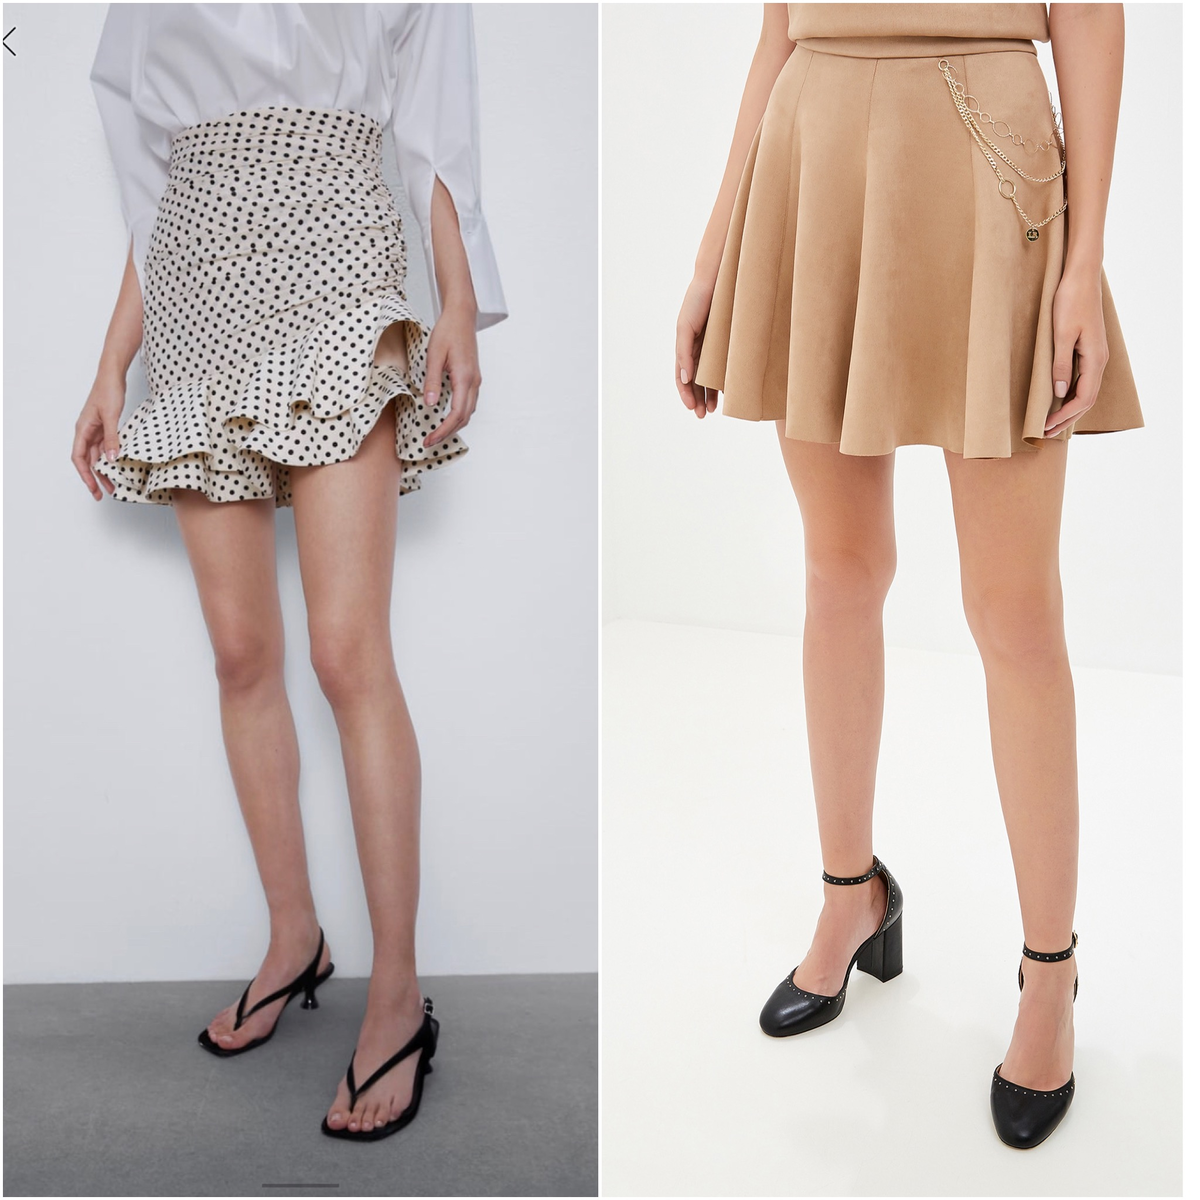 Тест: сможете ли вы отличить модную юбку от старомодной?